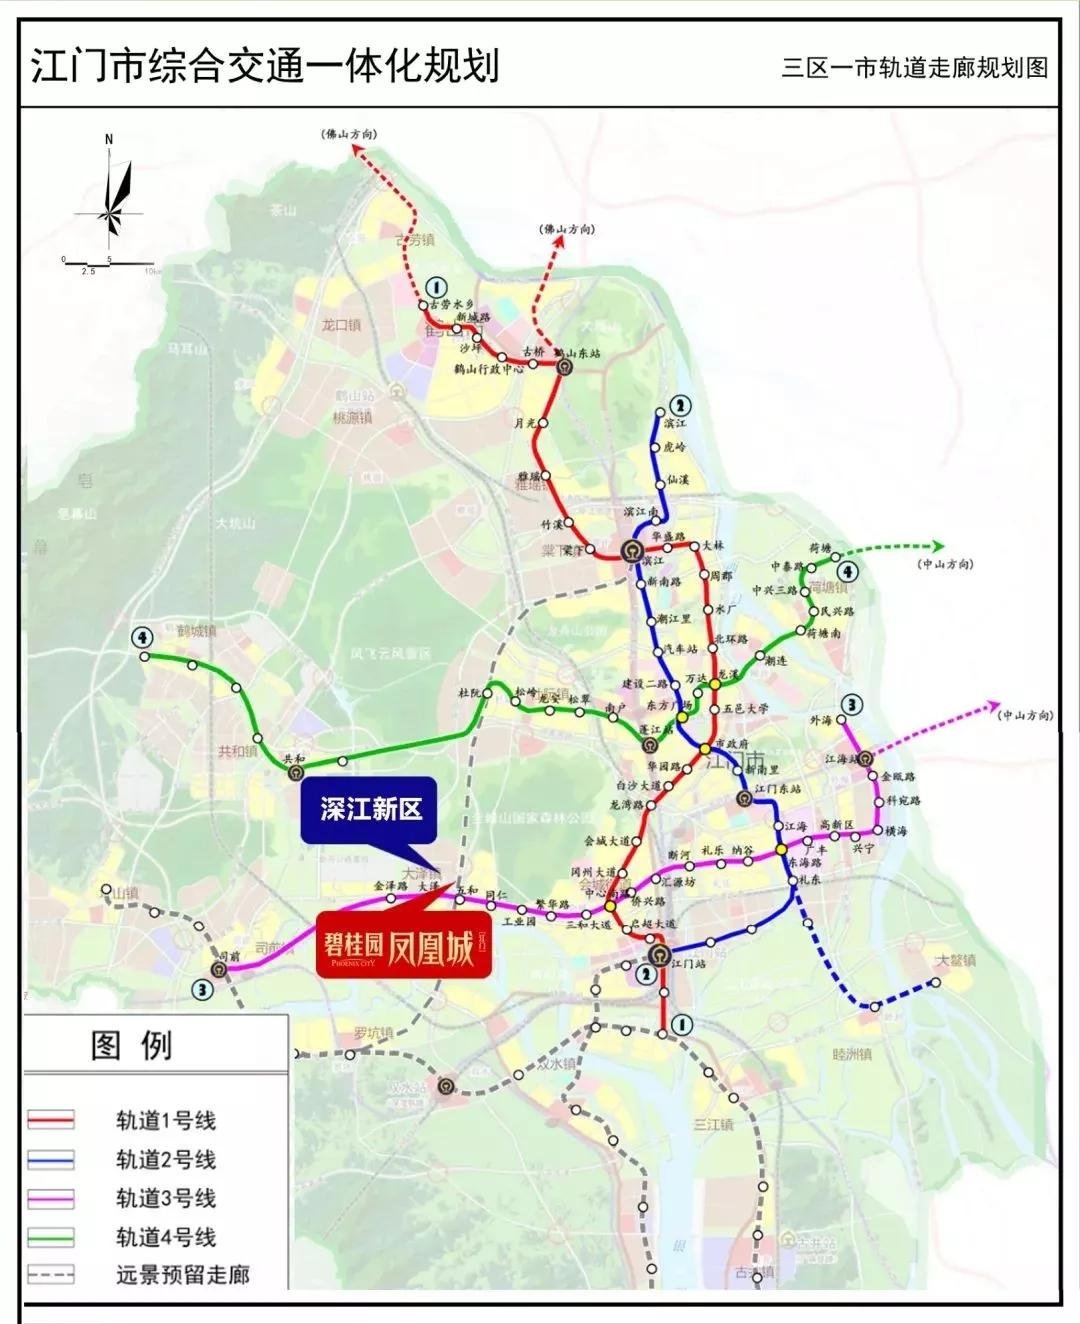 地铁,海运和航空方面也在加码推进,在江门东部三区一市轨道走廊规划